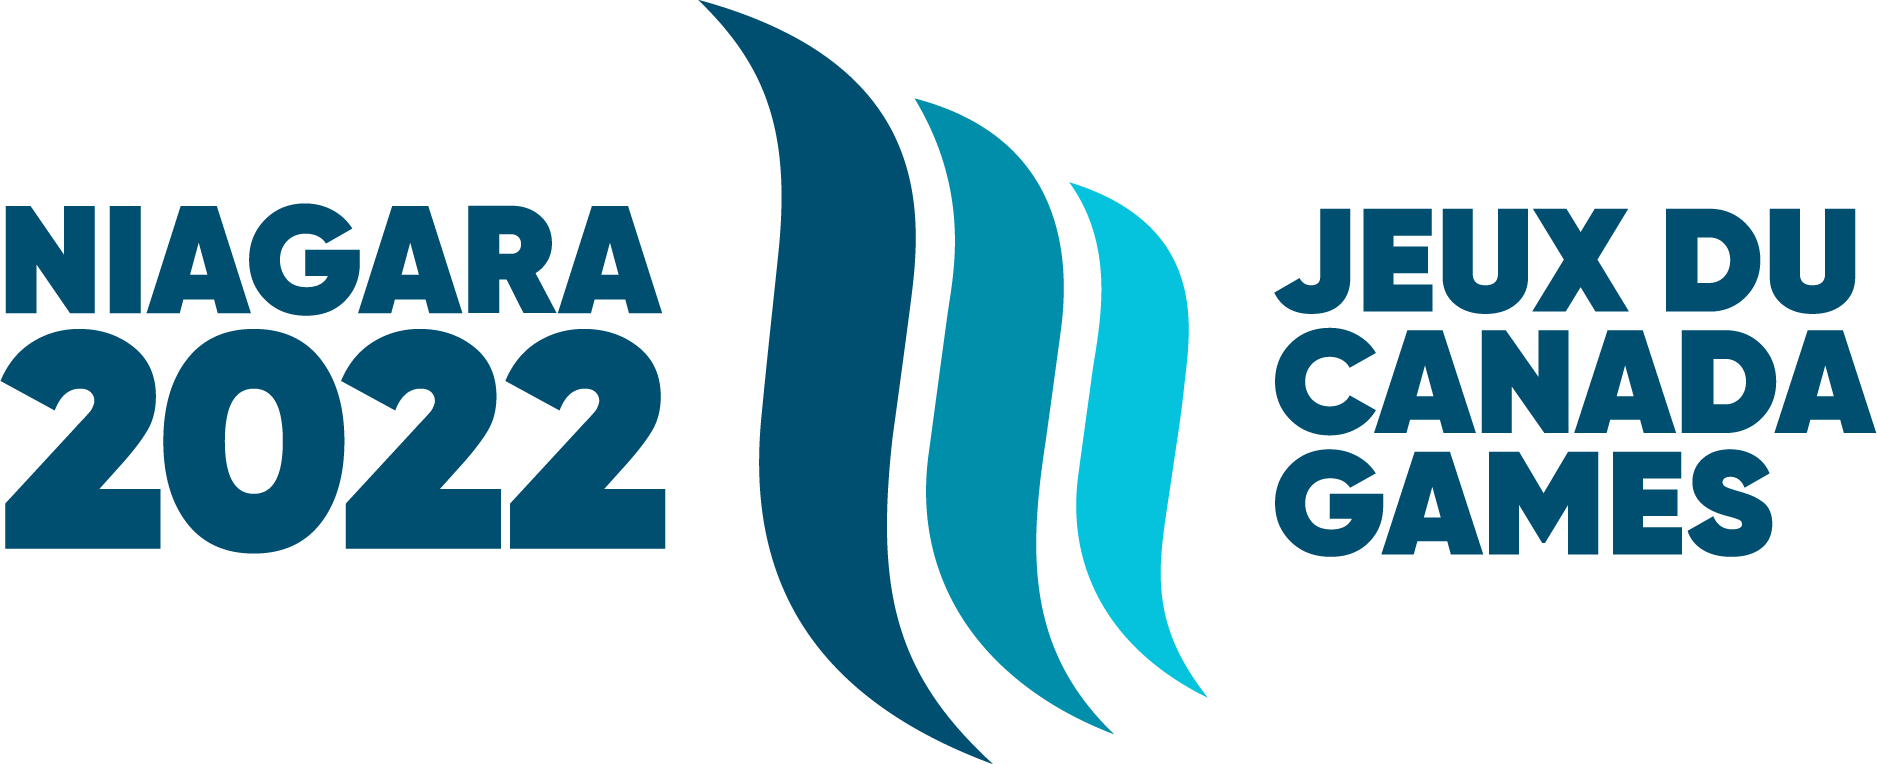 Niagara 2022 Canada Games